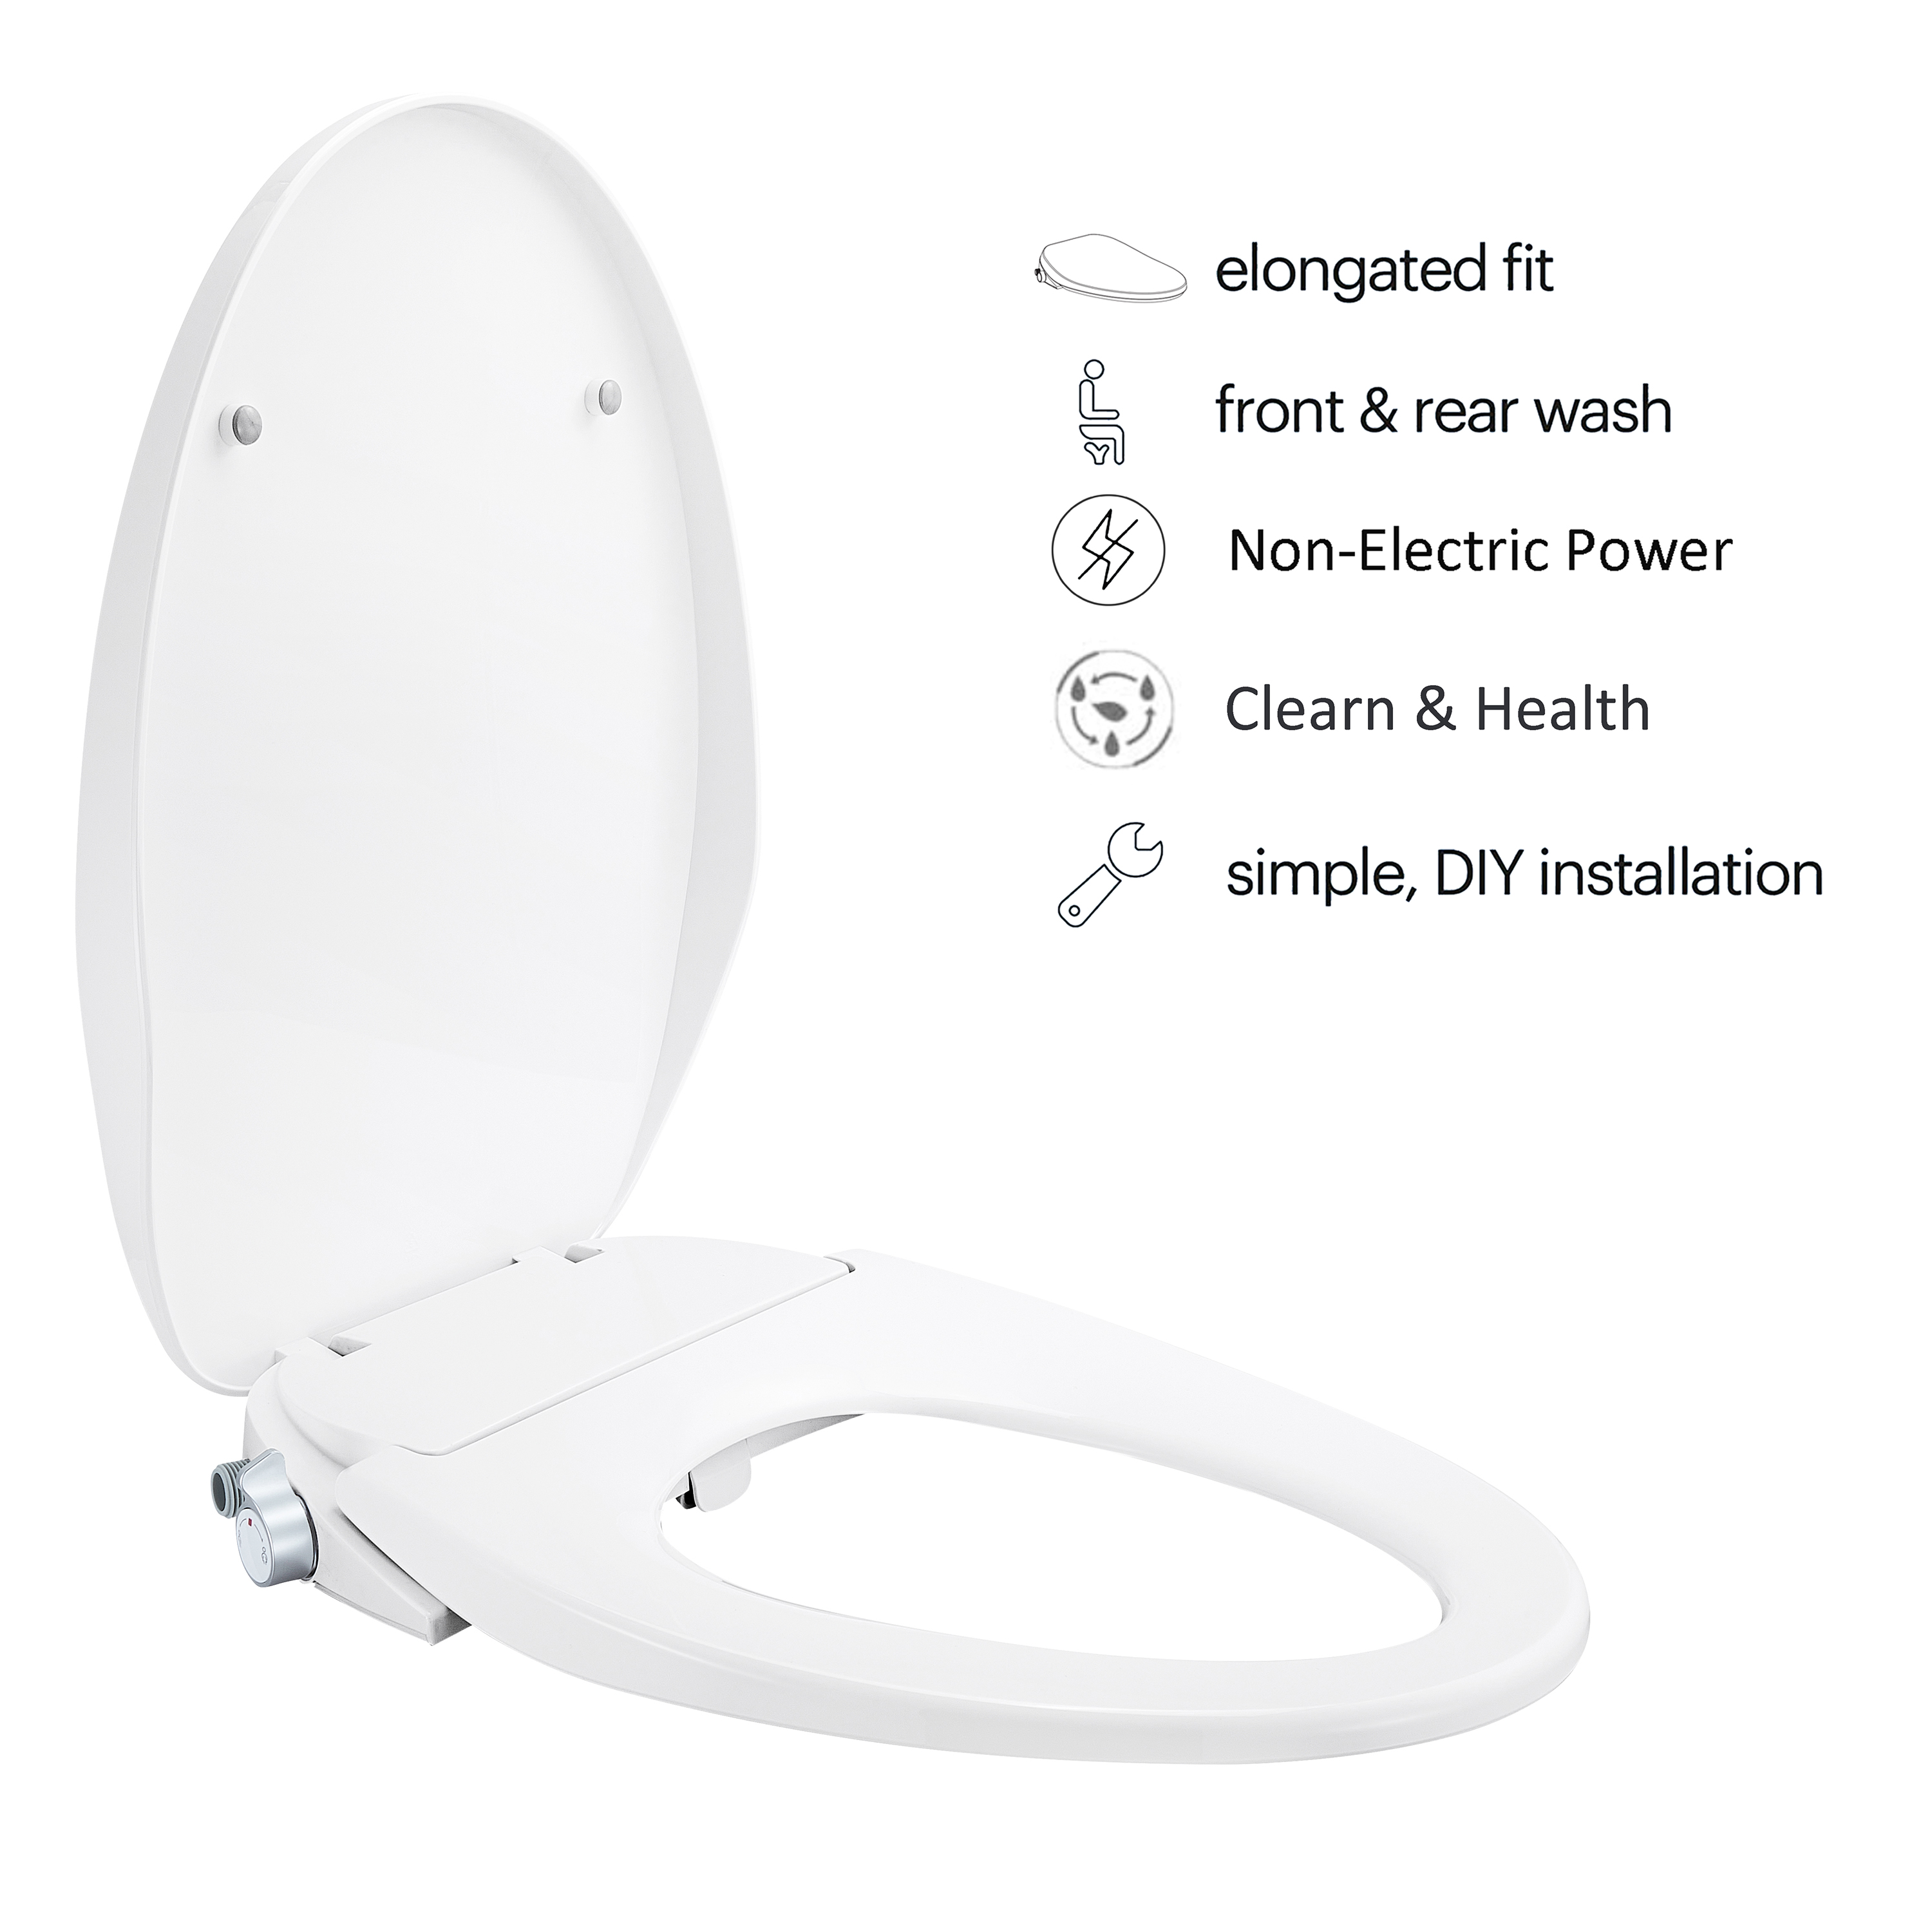 MEJE #VB-L Sedile WC per bidet non elettrico, adatto a WC allungati, bianco - Doppio ugello con spruzzatori regolabili, facile installazione...